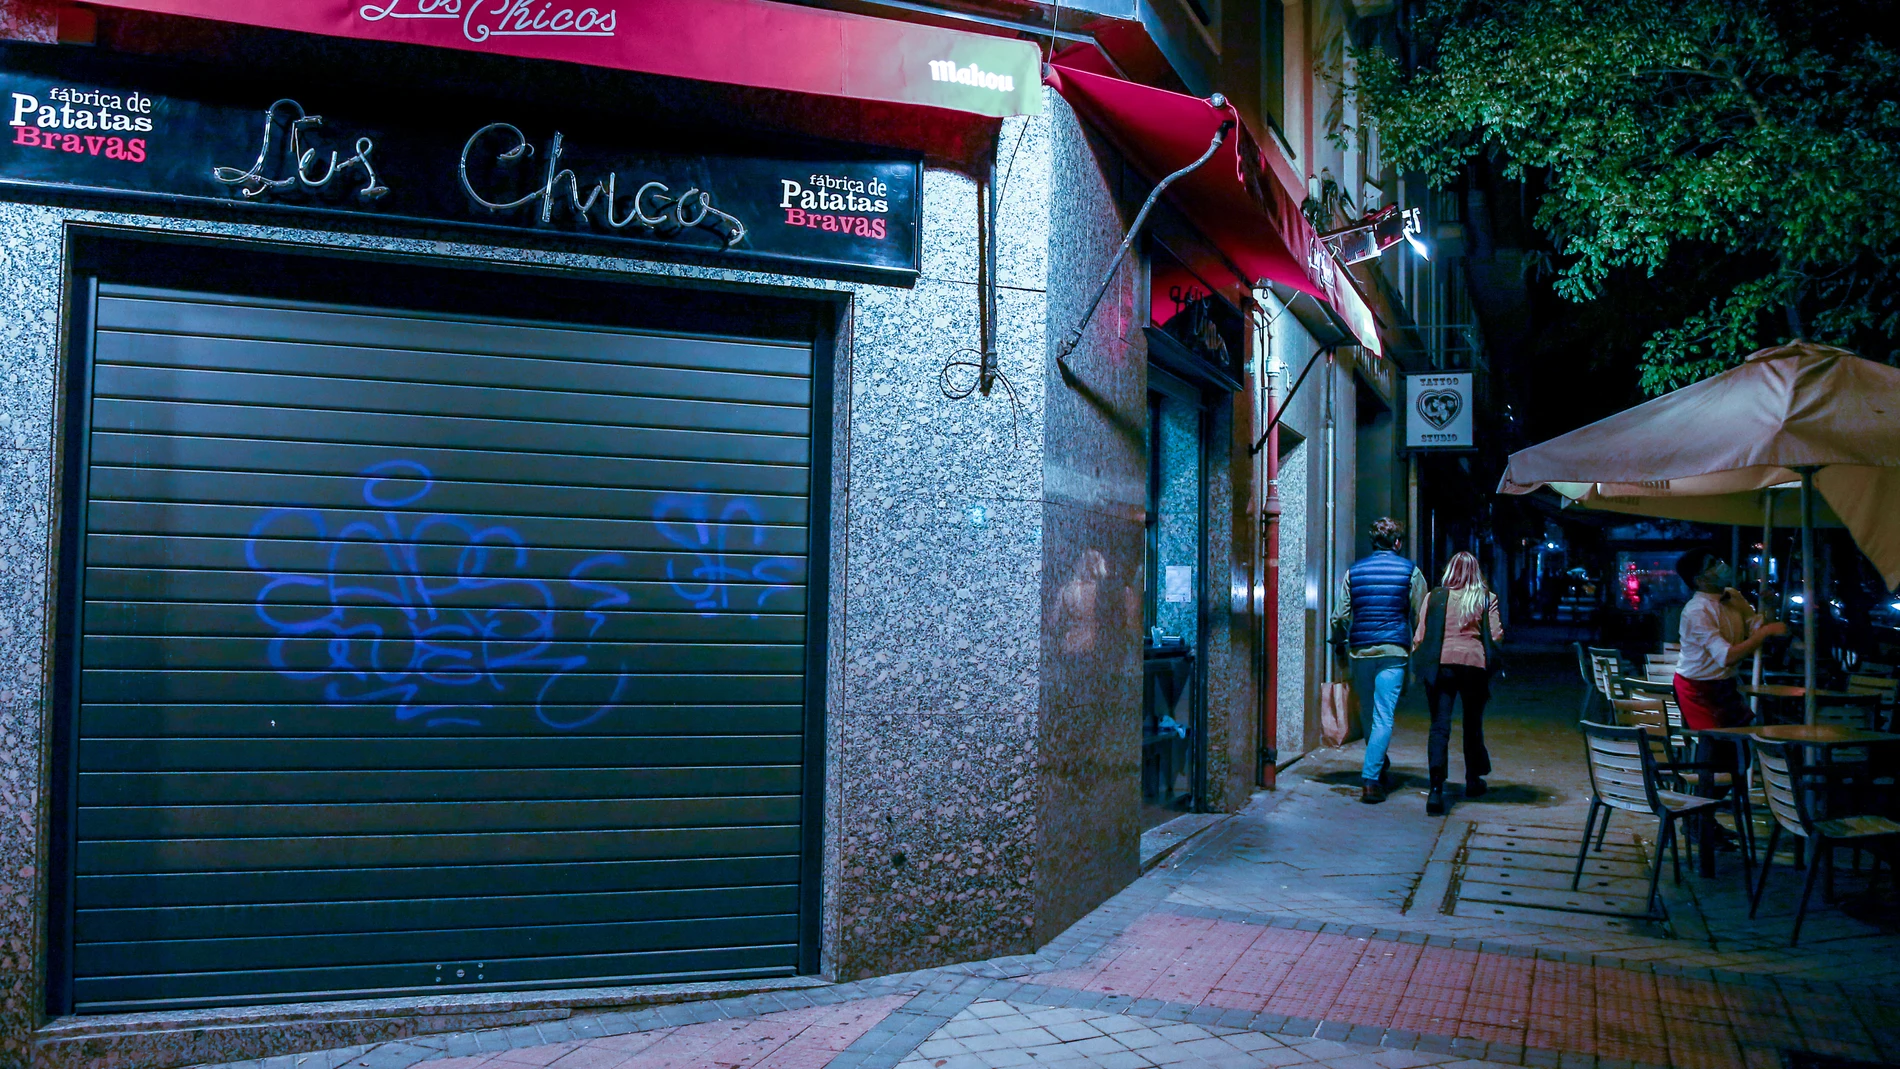 Un establecimiento cerrado durante estos días de pandemia. Ricardo Rubio / Europa Press